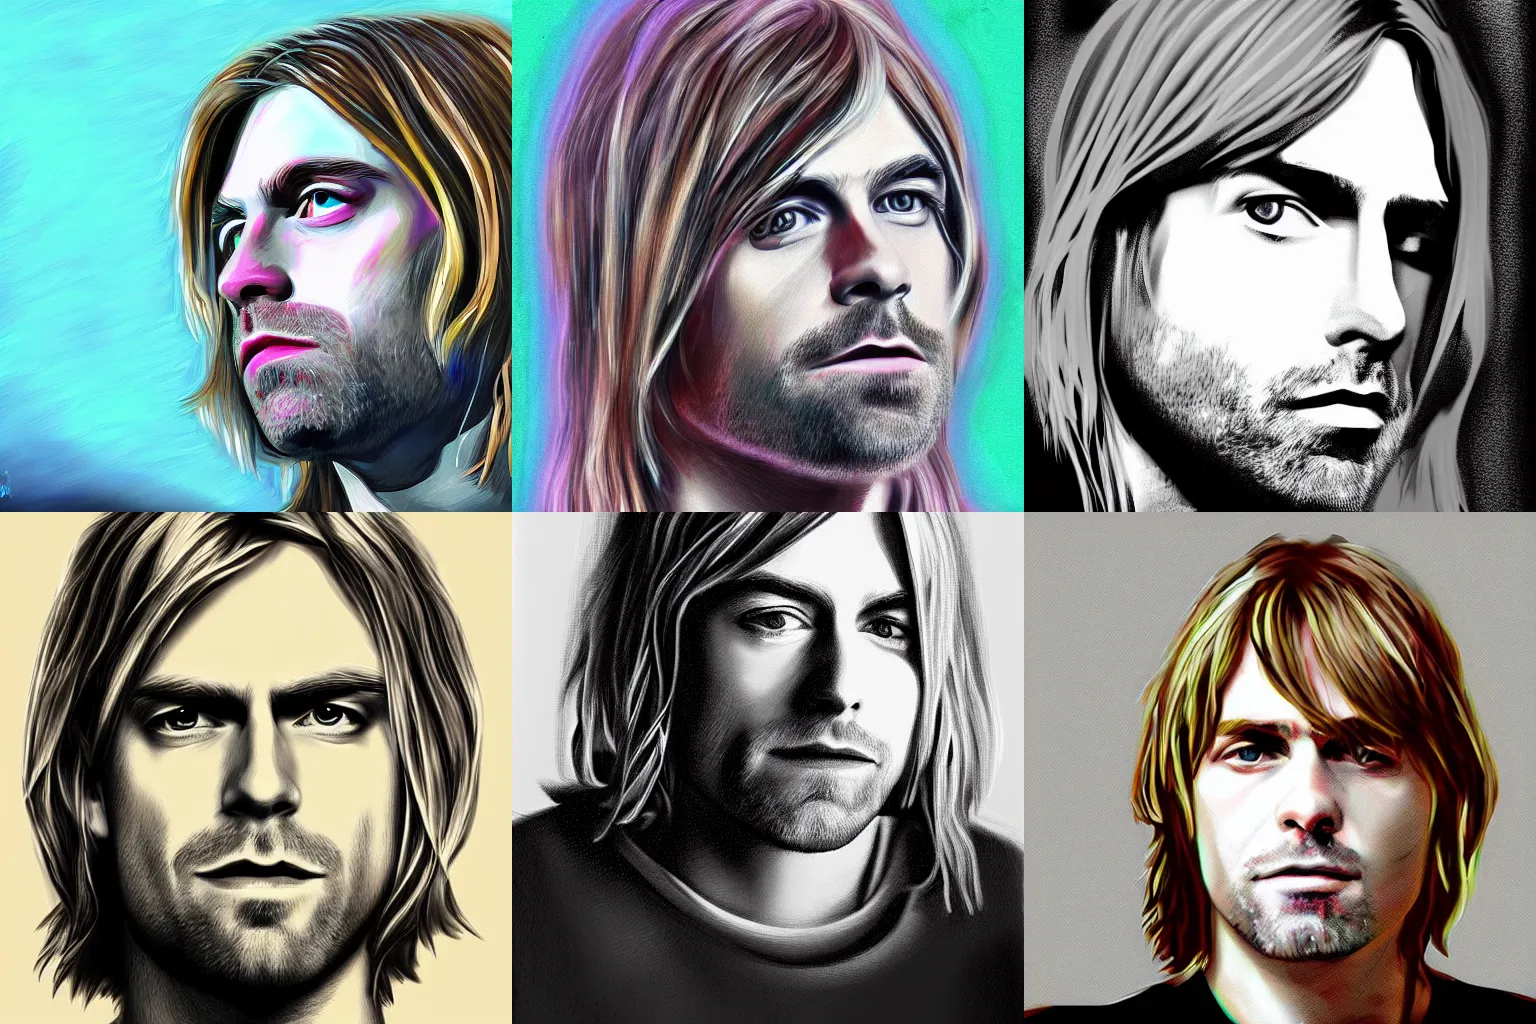 Prompt: kurt cobain, portrait, profile, digital paint, realistic